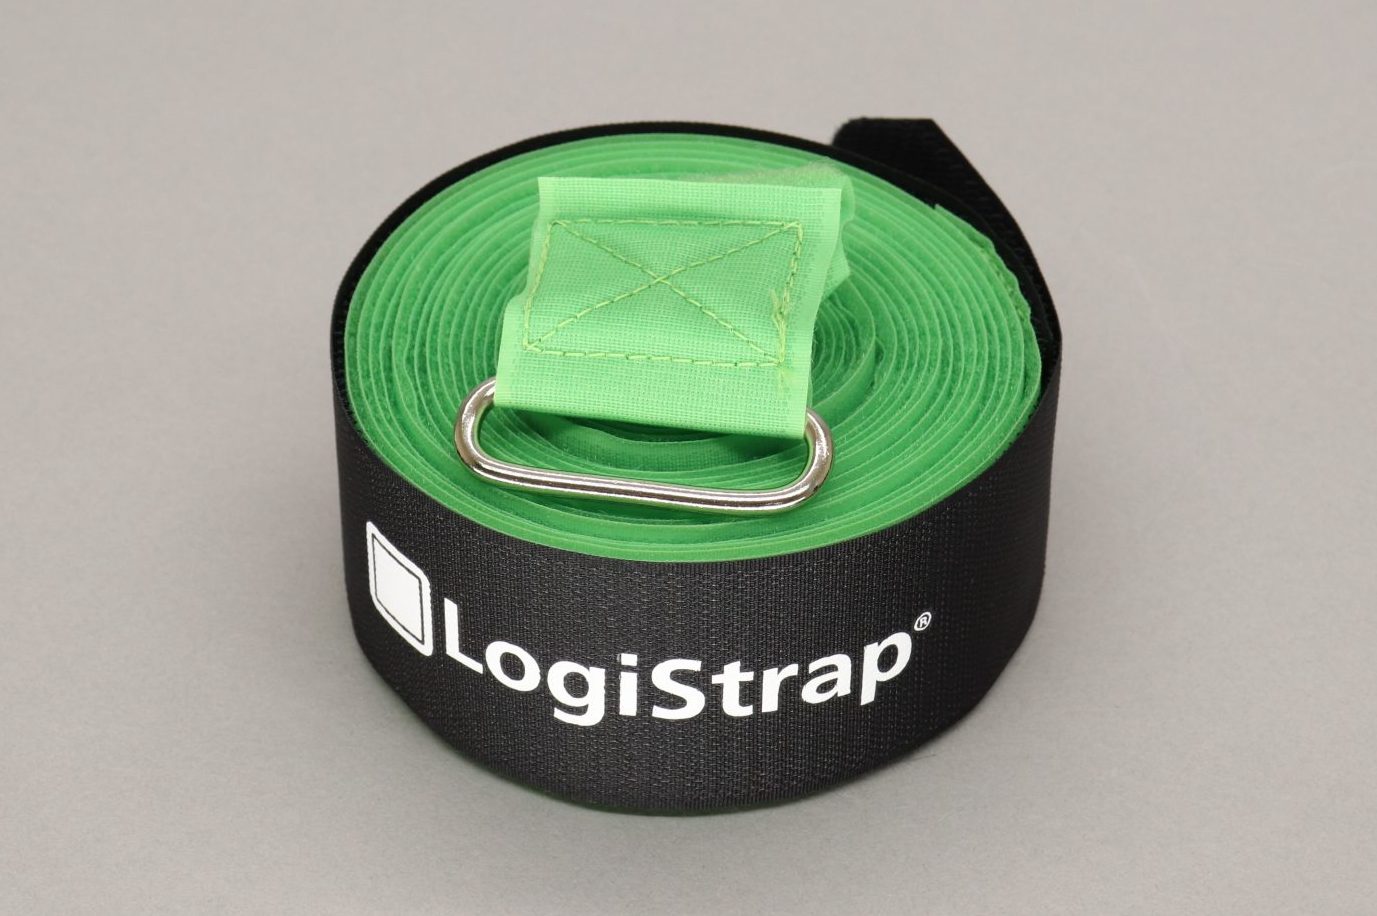 7m LogiStrap® Strap